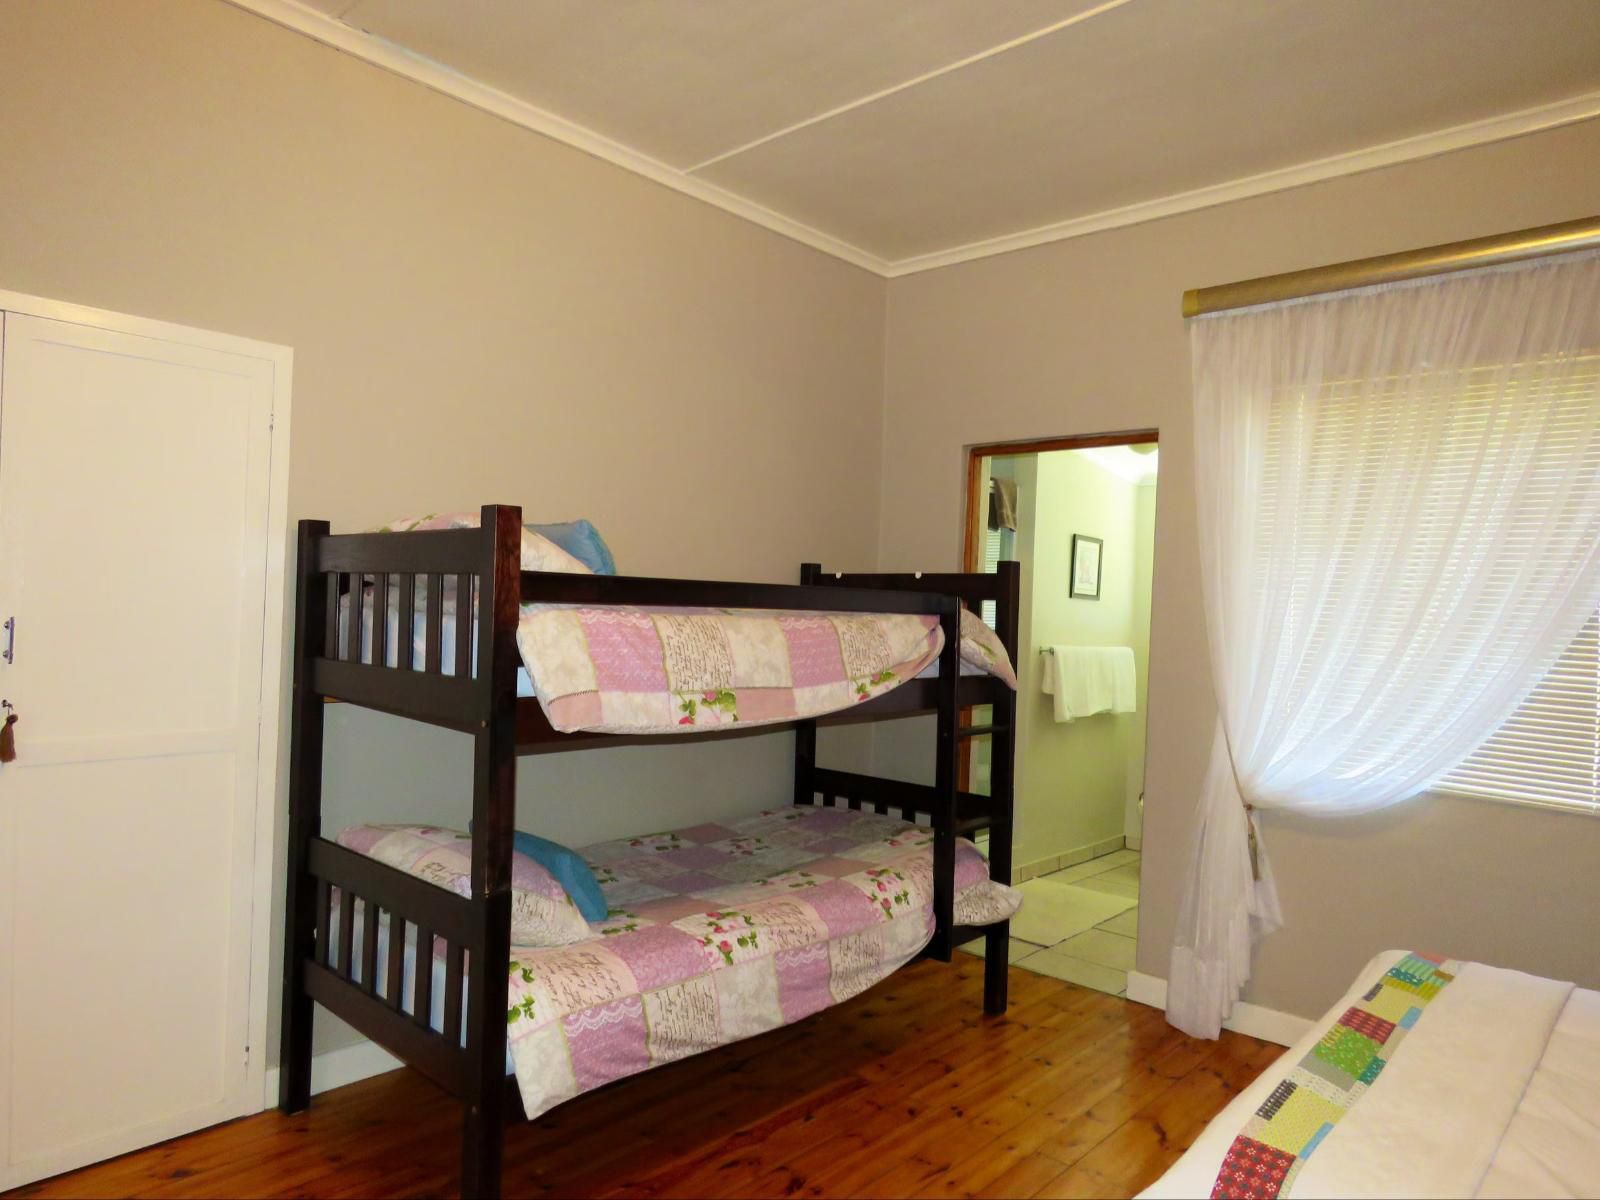 Schoongelegen Rooms Riversdale Western Cape South Africa Bedroom